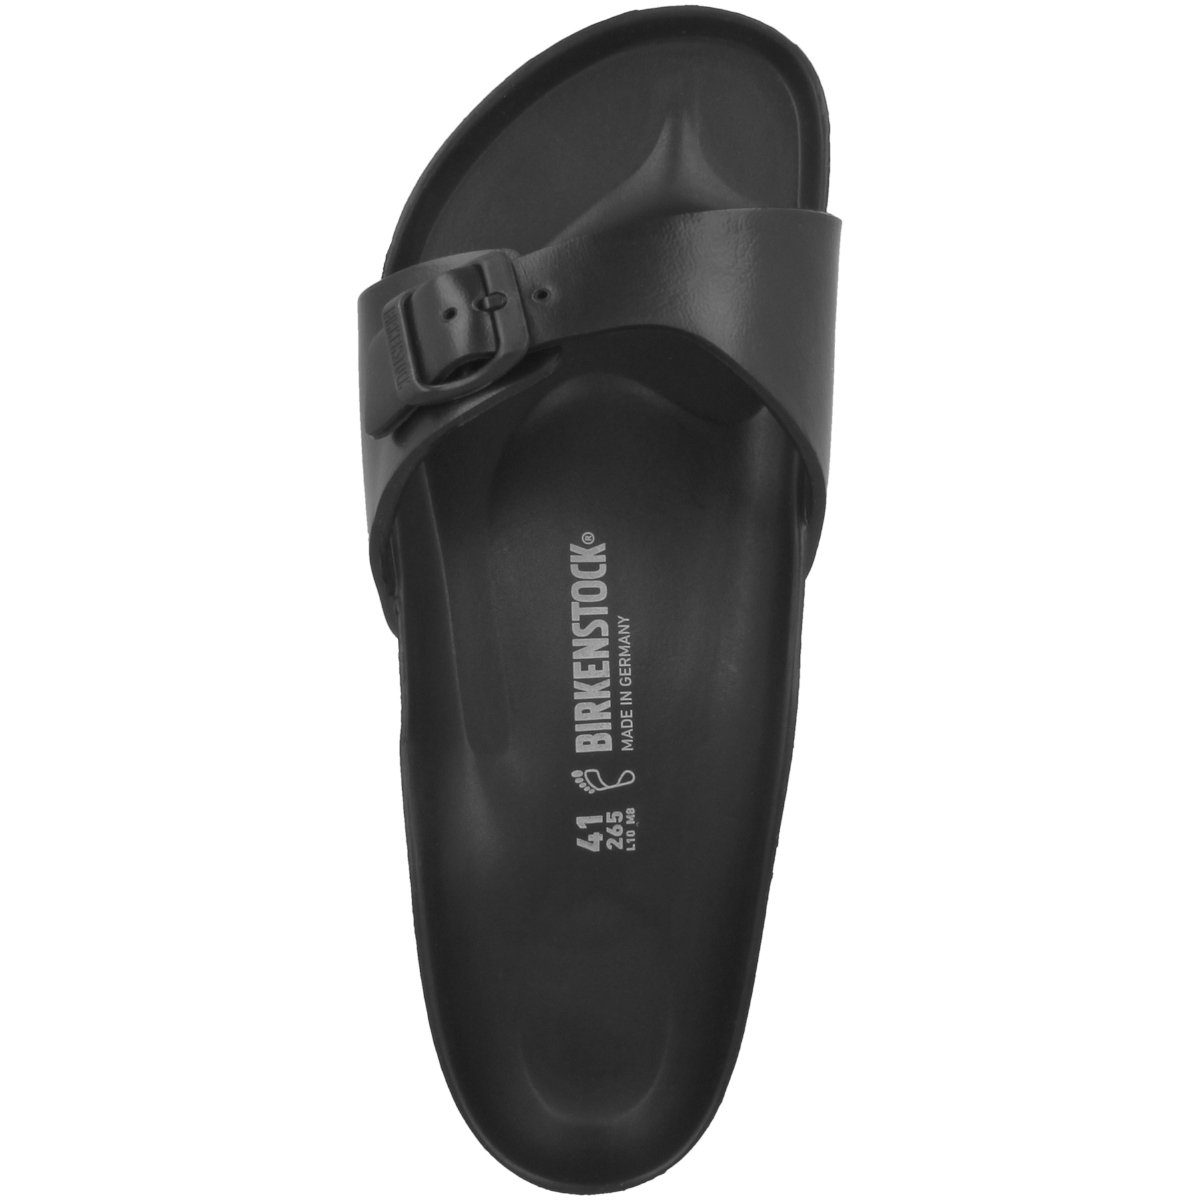 Birkenstock Madrid EVA schmal schwarz Erwachsene Unisex Sandale